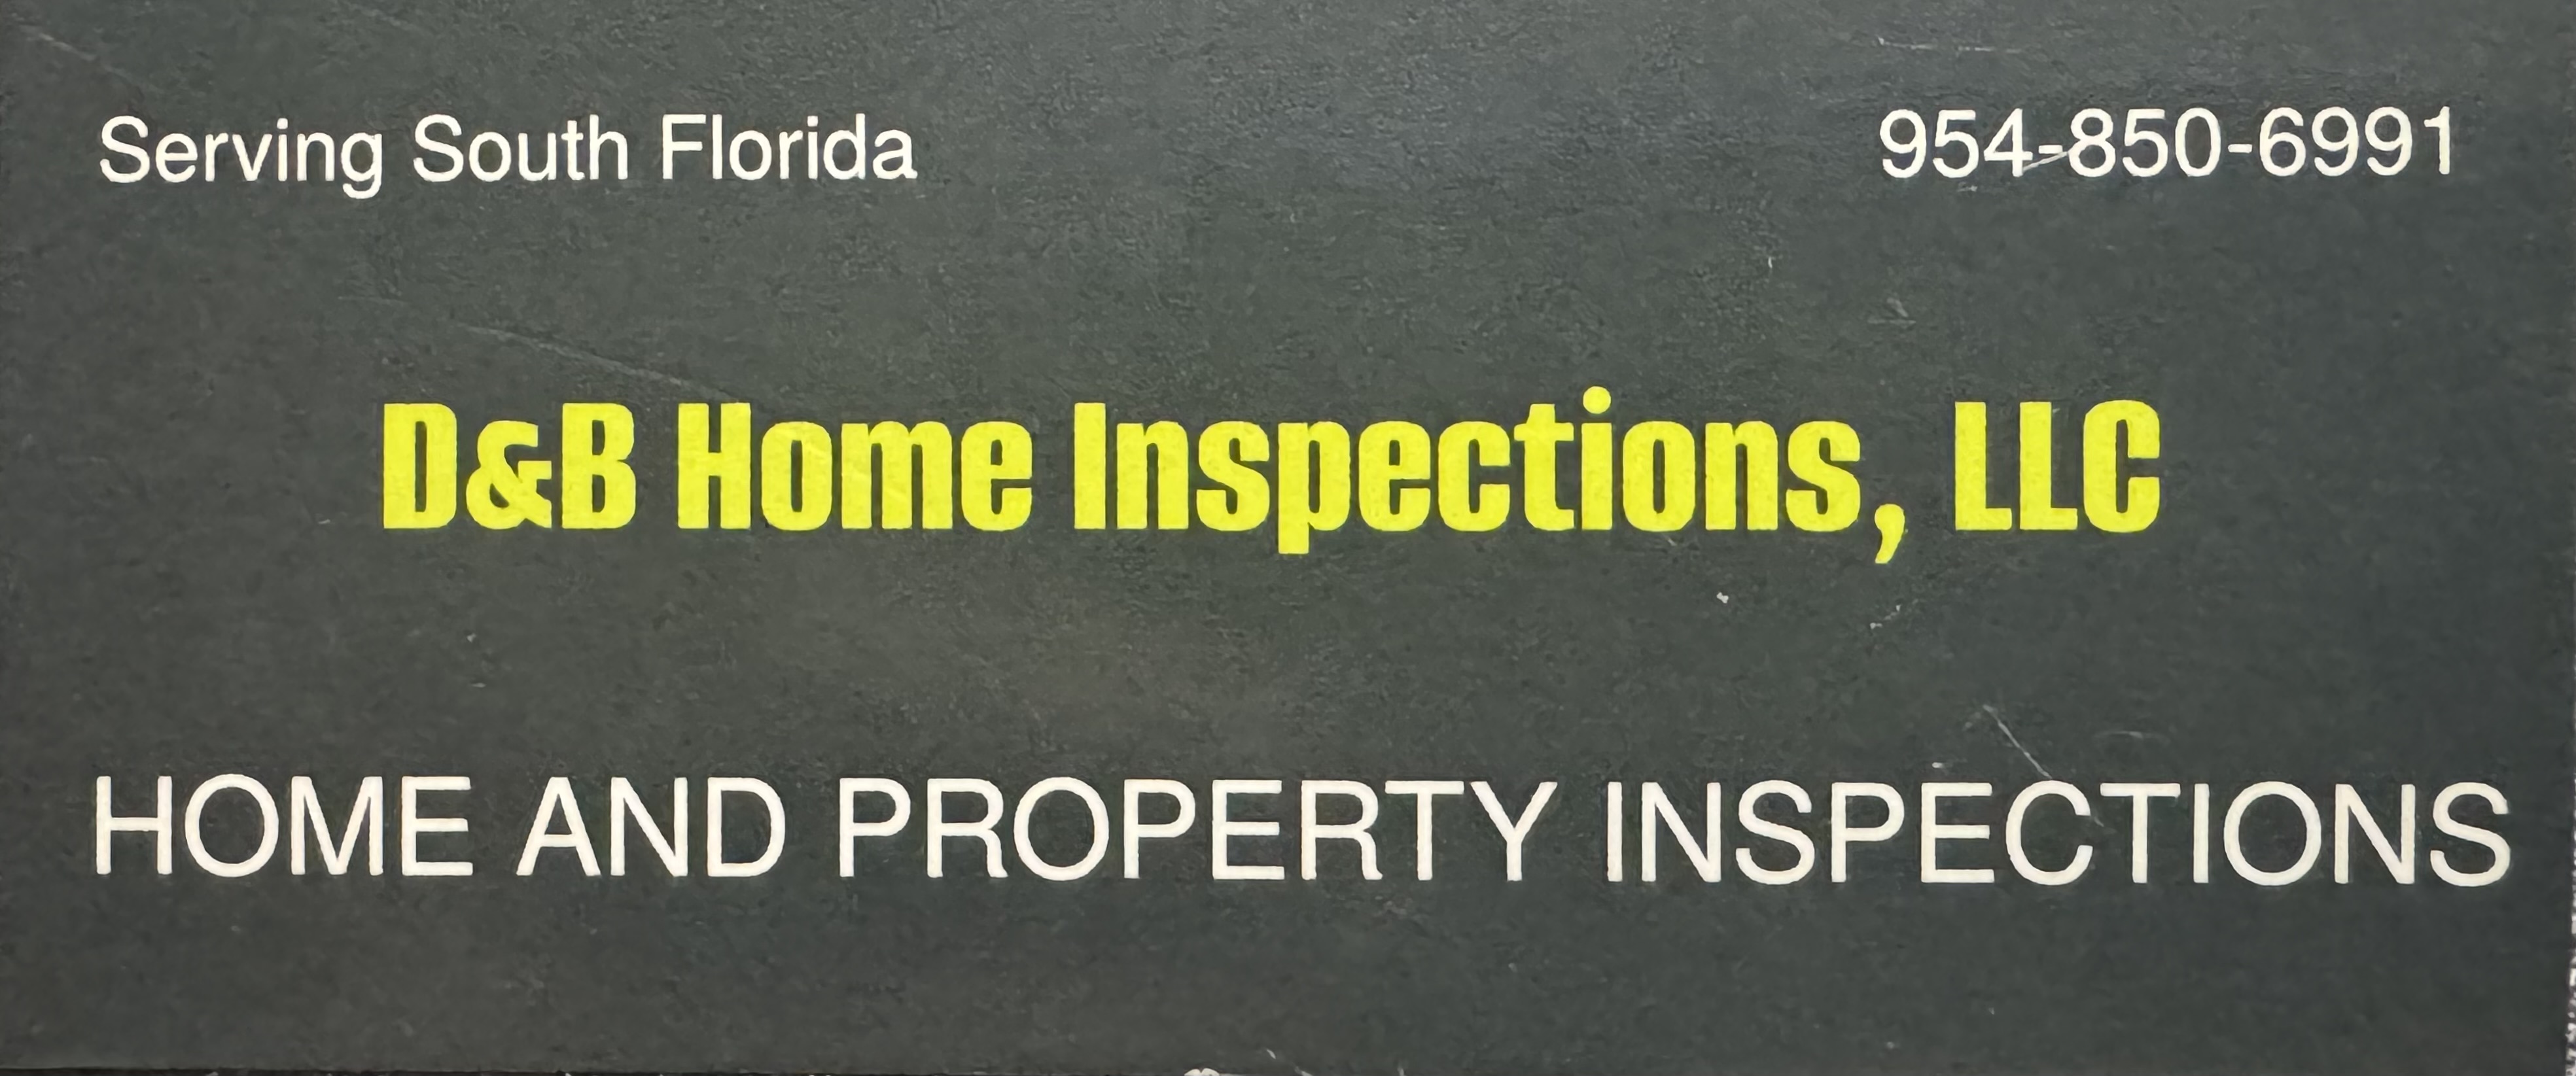 D&B Home Inspection, LLC Logo